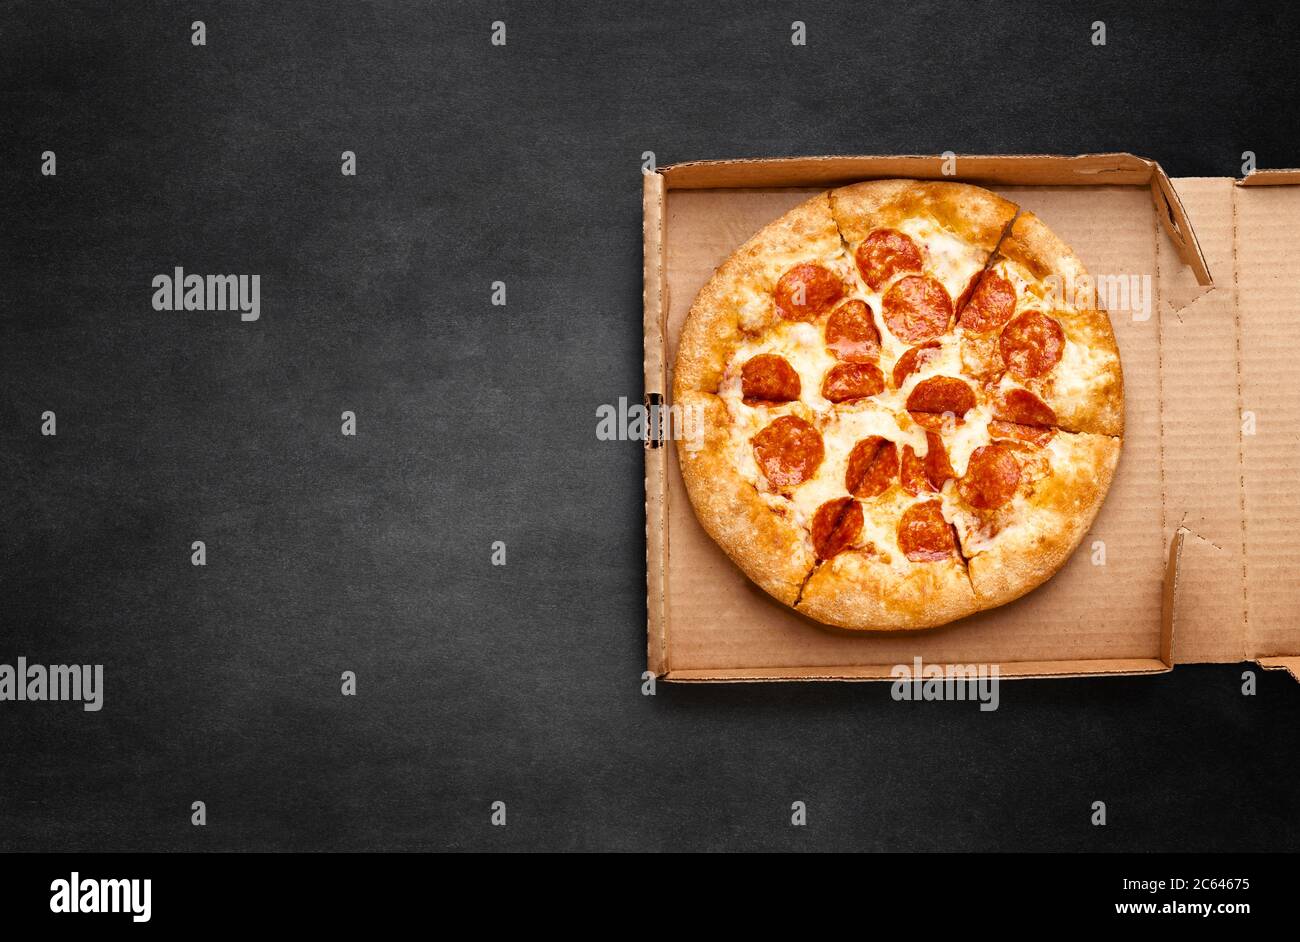 Pizza dans une boîte en carton sur un tableau noir. Espace pour votre texte. Vue de dessus du forfait pizza. Livraison de pizza. Banque D'Images